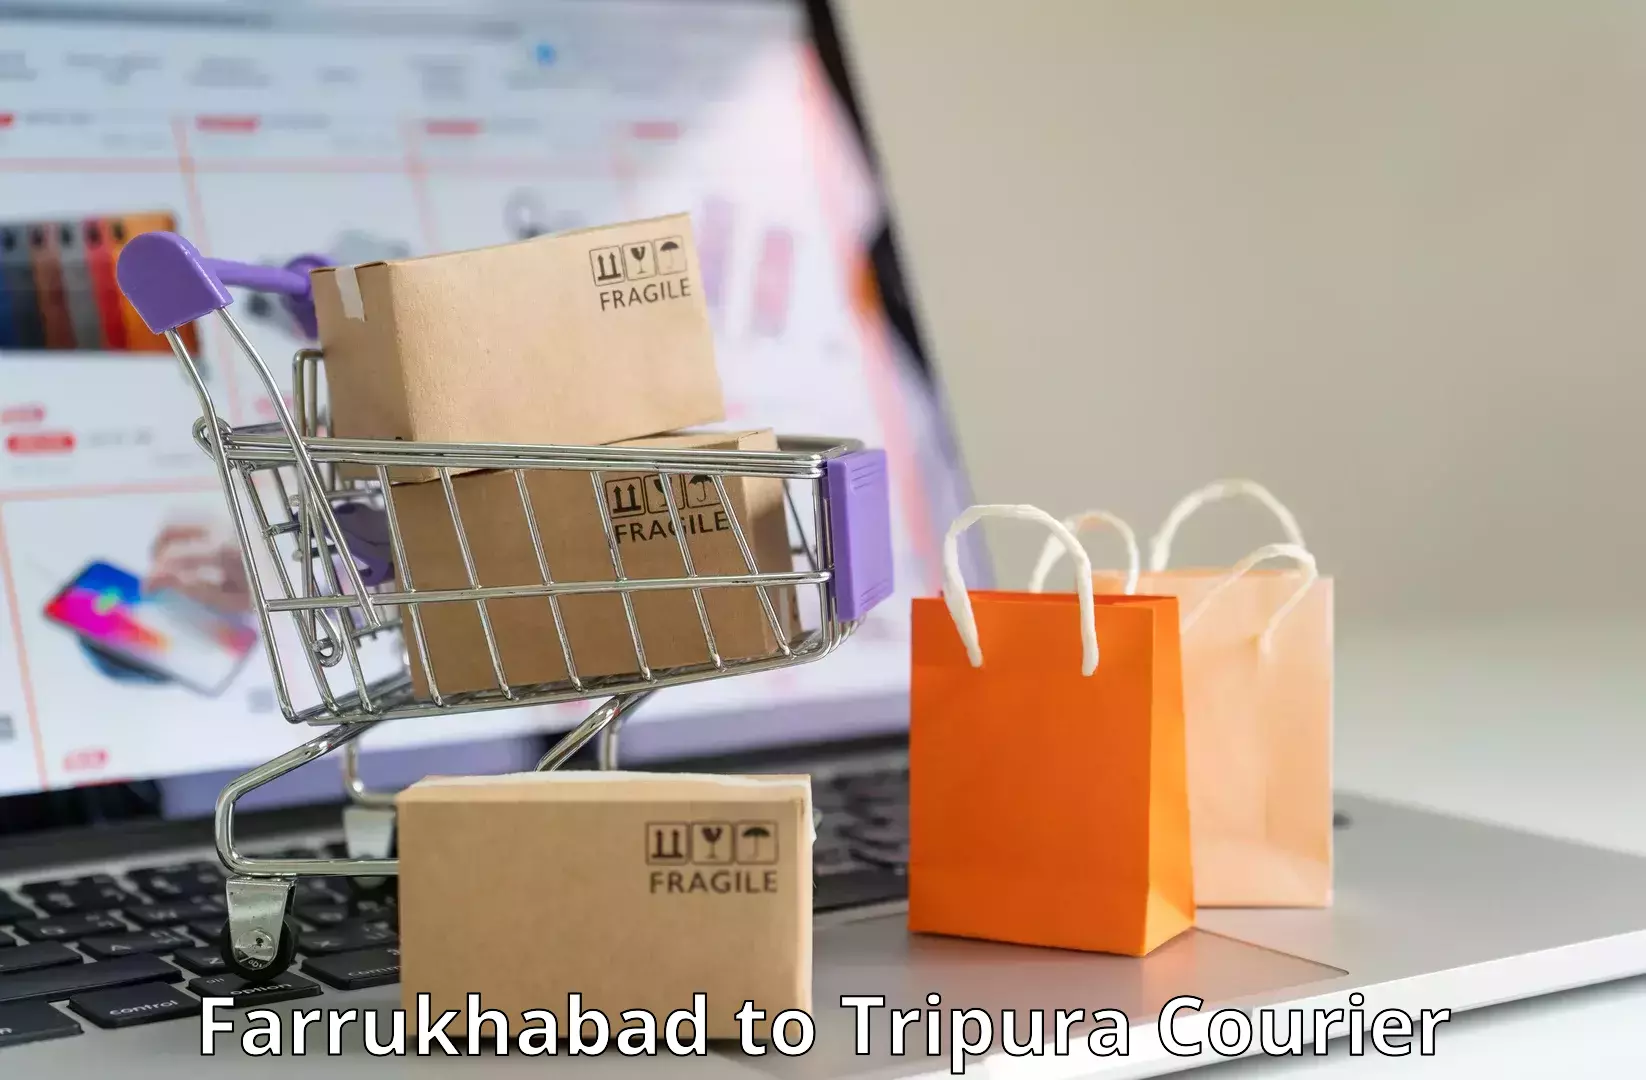 On-time shipping guarantee Farrukhabad to IIIT Agartala